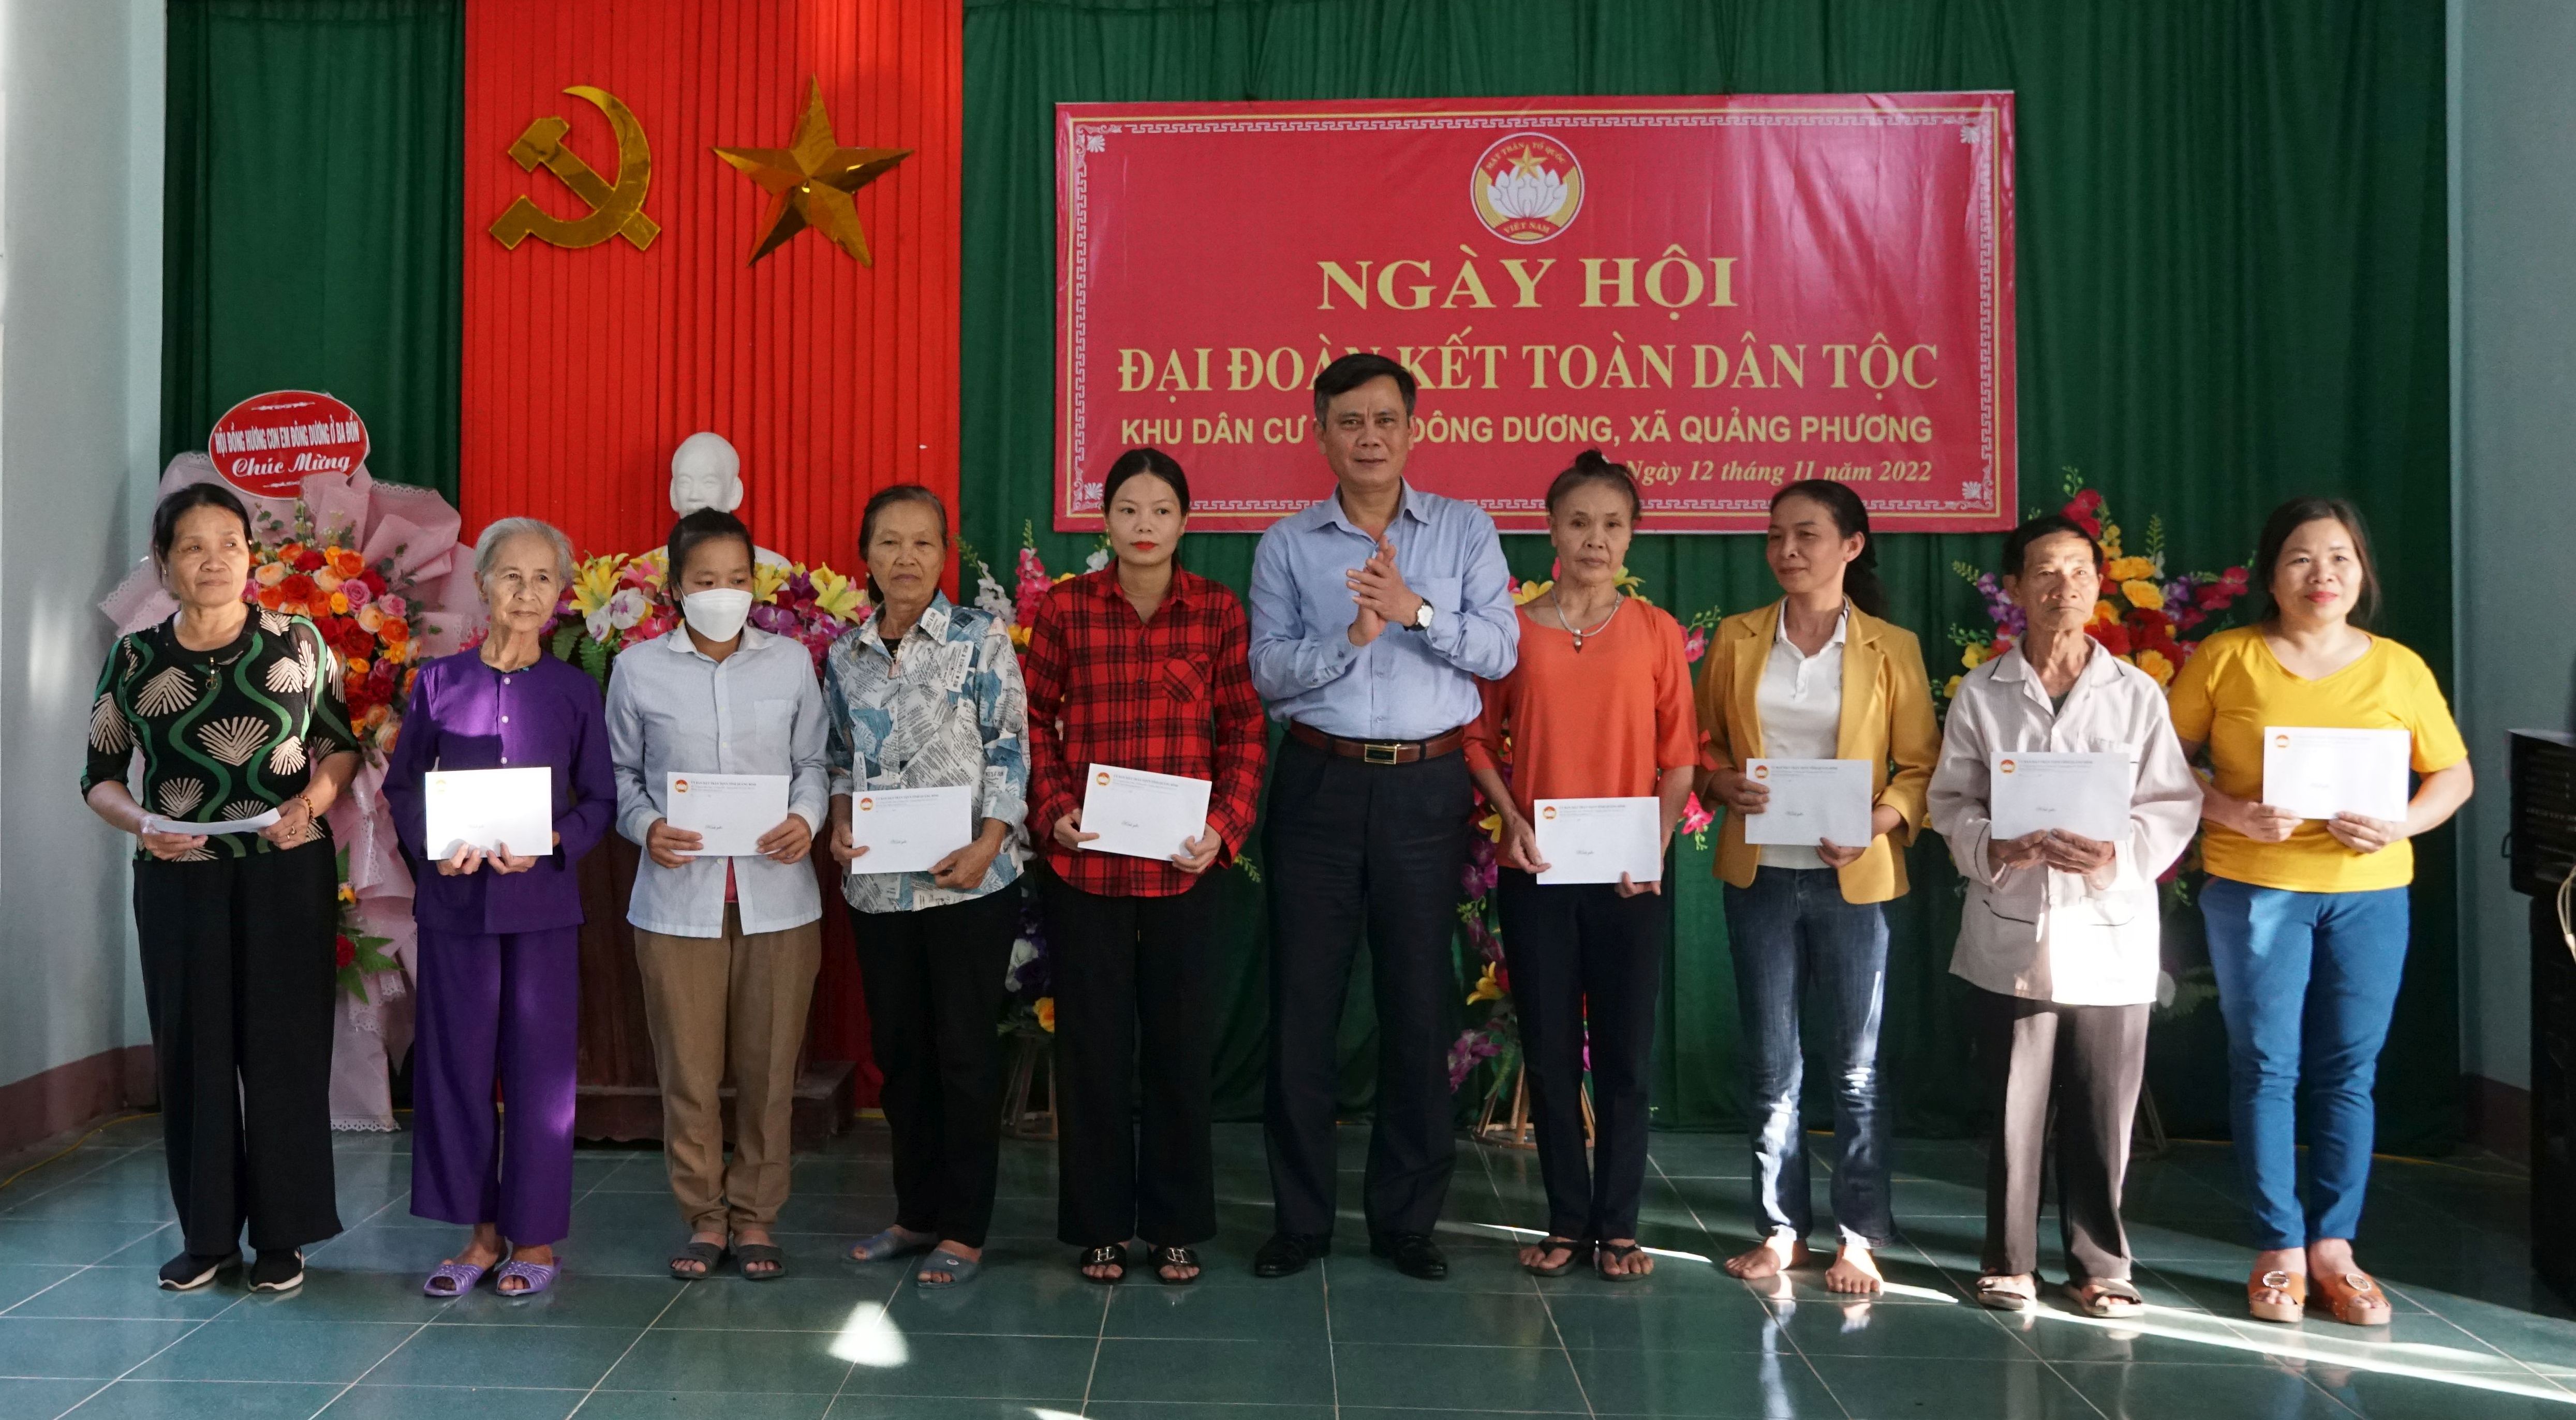 Đồng chí Chủ tịch UBND tỉnh Trần Thắng tặng quà hỗ trợ cho 10 gia đình có hoàn cảnh khó khăn ở thôn Đông Dương.